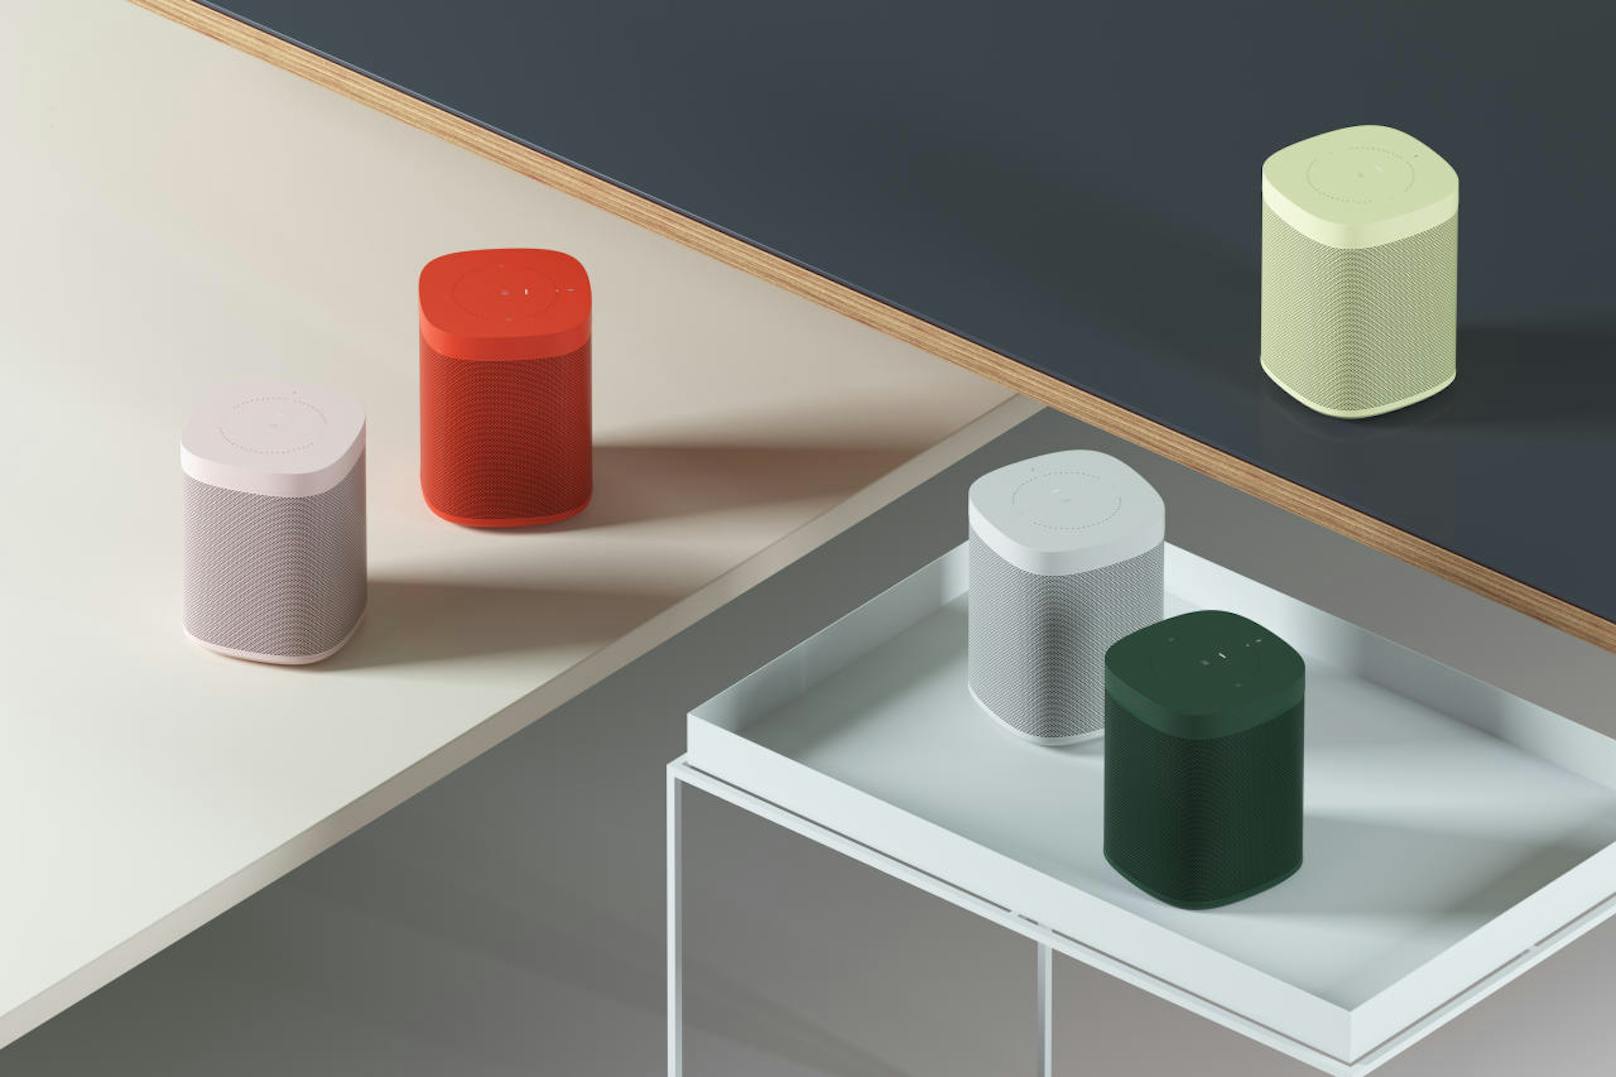 Sonos geht eine Partnerschaft mit HAY ein. Sonos und HAY entdecken gemeinsam, welche Dimensionen Farbe einem Zuhause verleihen kann - und zwar mit dem Sonos One. Ab September 2018 ist eine exklusive Kollektion des Smart Speakers in drei neuen, an die HAY Farbpalette angelehnten, Farbnuancen erhältlich: Rot, Grün und Gelb ab 259 Euro erhältlich.